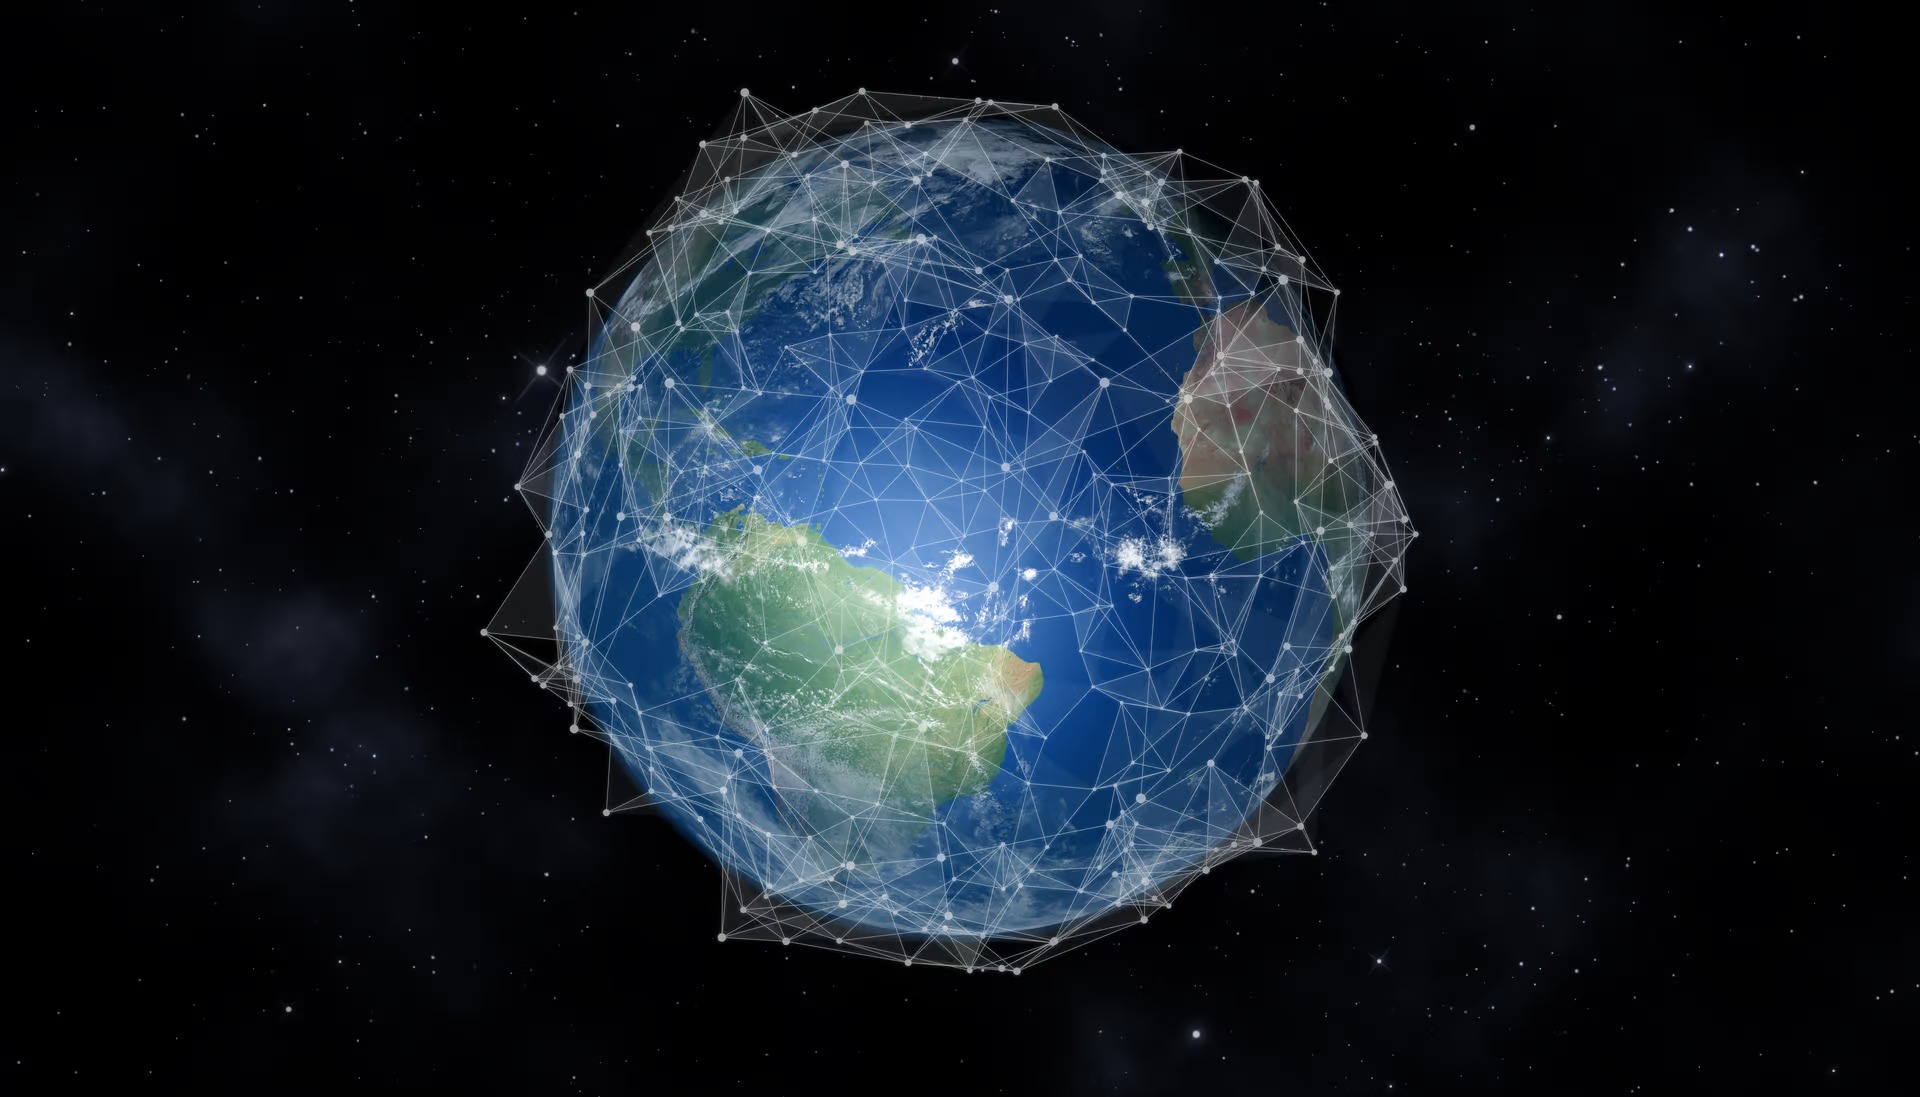 Lưới điện vệ tinh: Giải pháp truyền năng lượng trên toàn cầu dễ dàng giống như truyền dữ liệu - Ảnh 4.